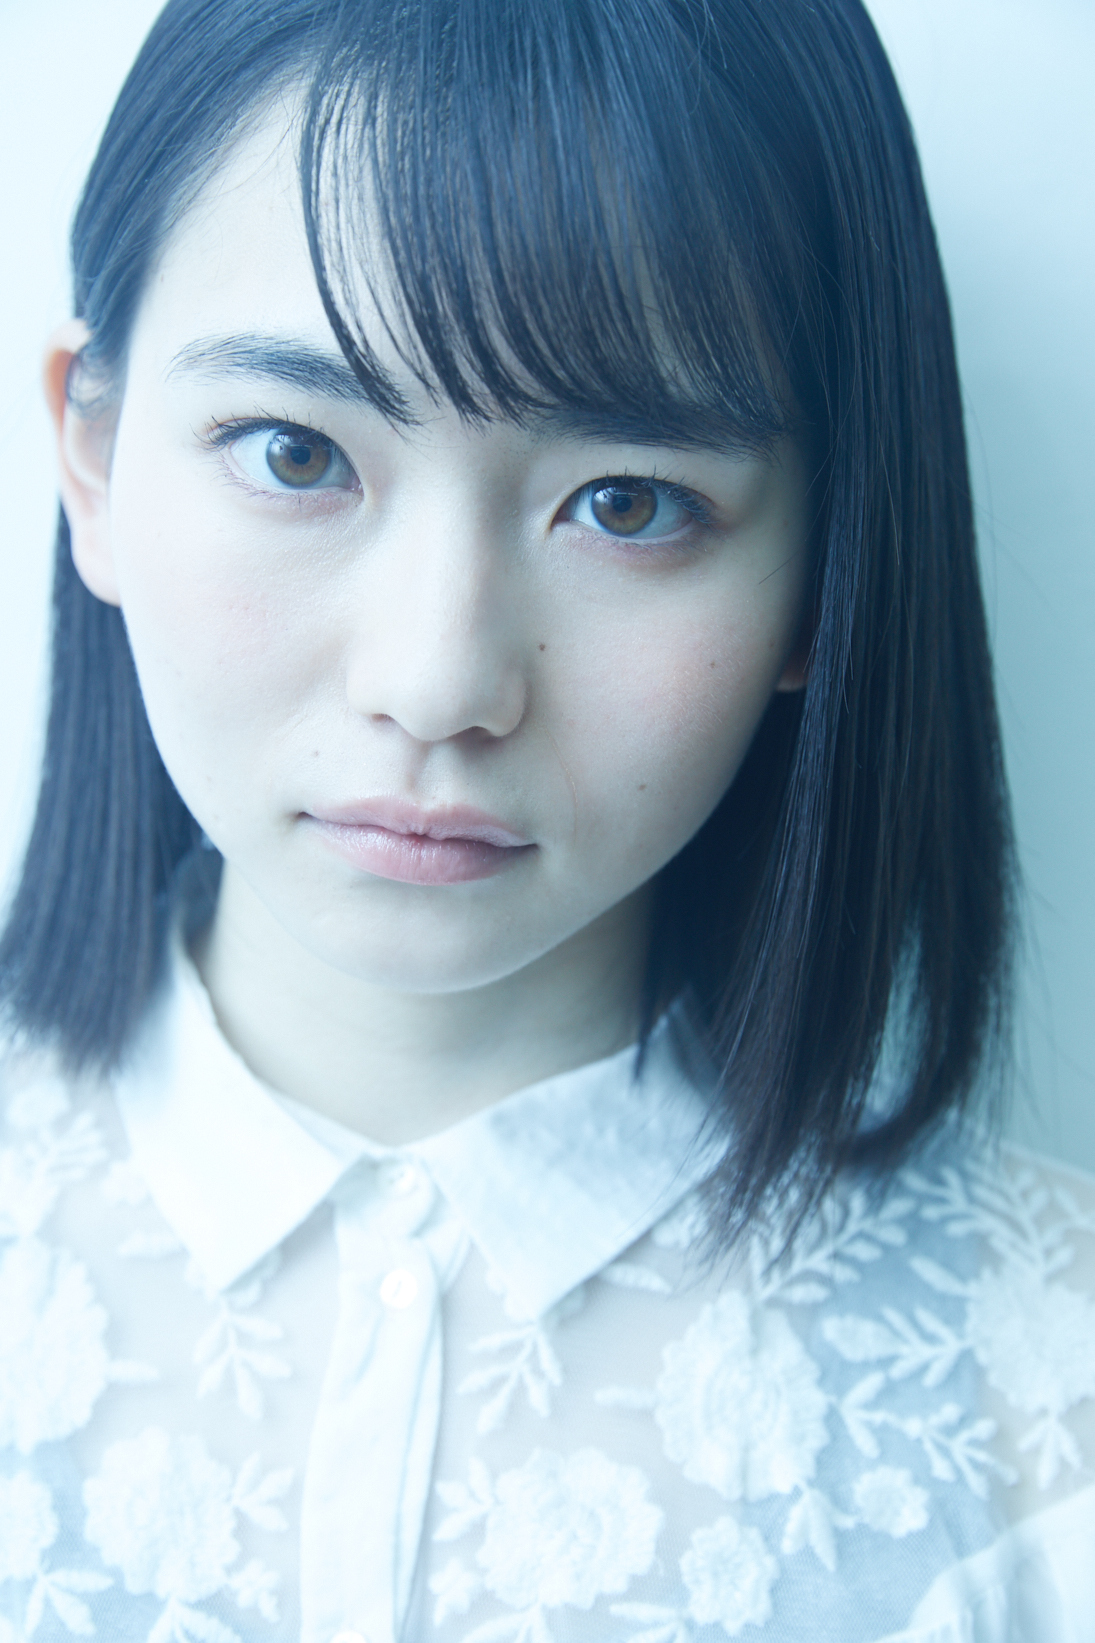 山田杏奈の目力画像まとめ 子役時代から瞳が綺麗で吸い込まれる マジかわいい 僕らのブックマークログ